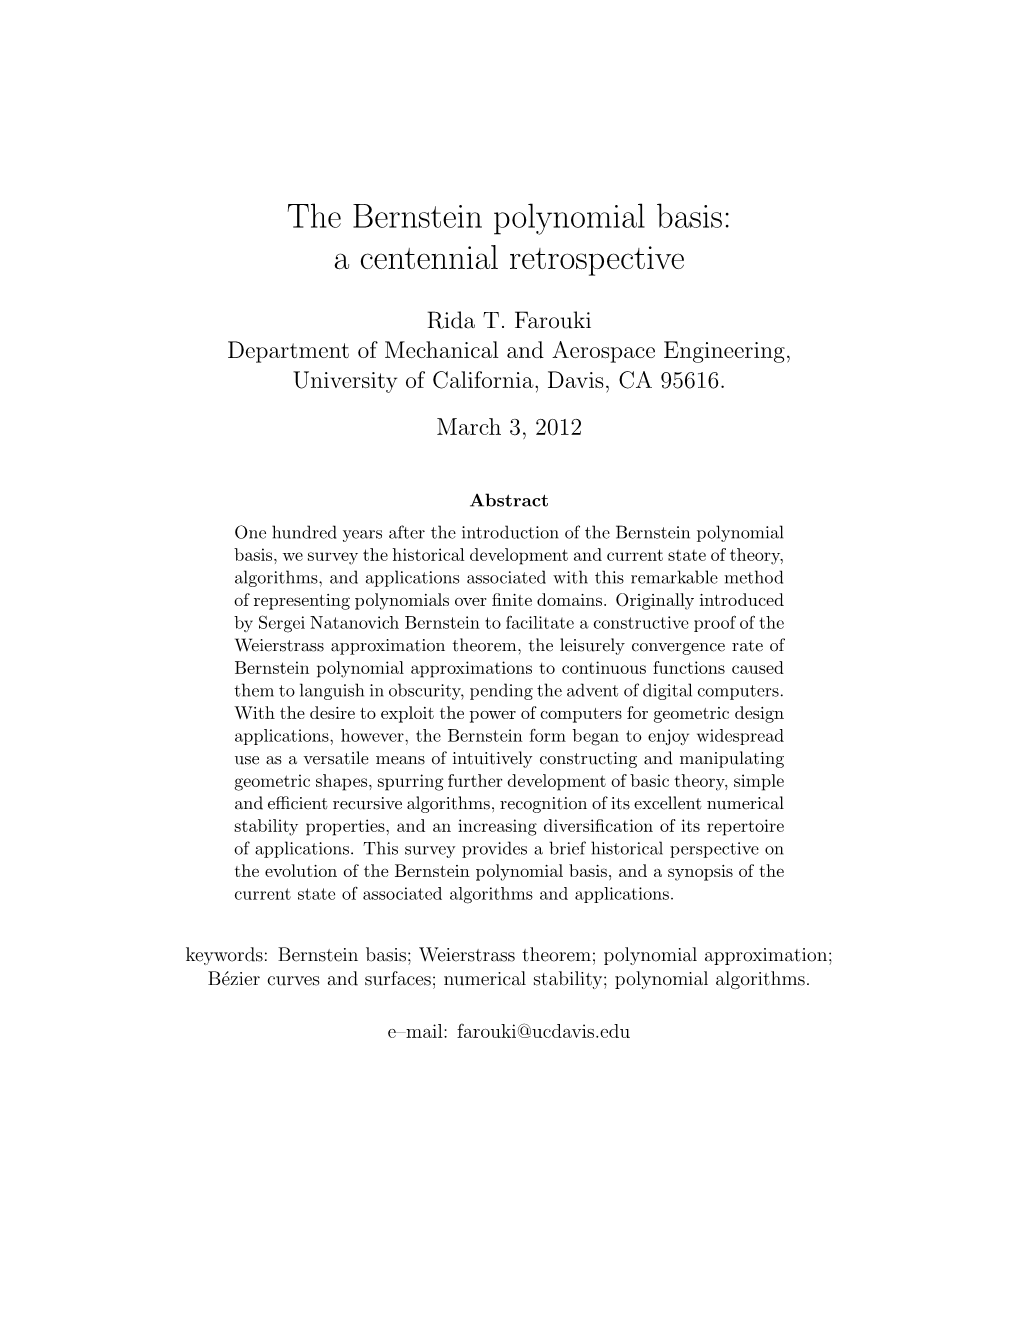 The Bernstein Polynomial Basis: a Centennial Retrospective